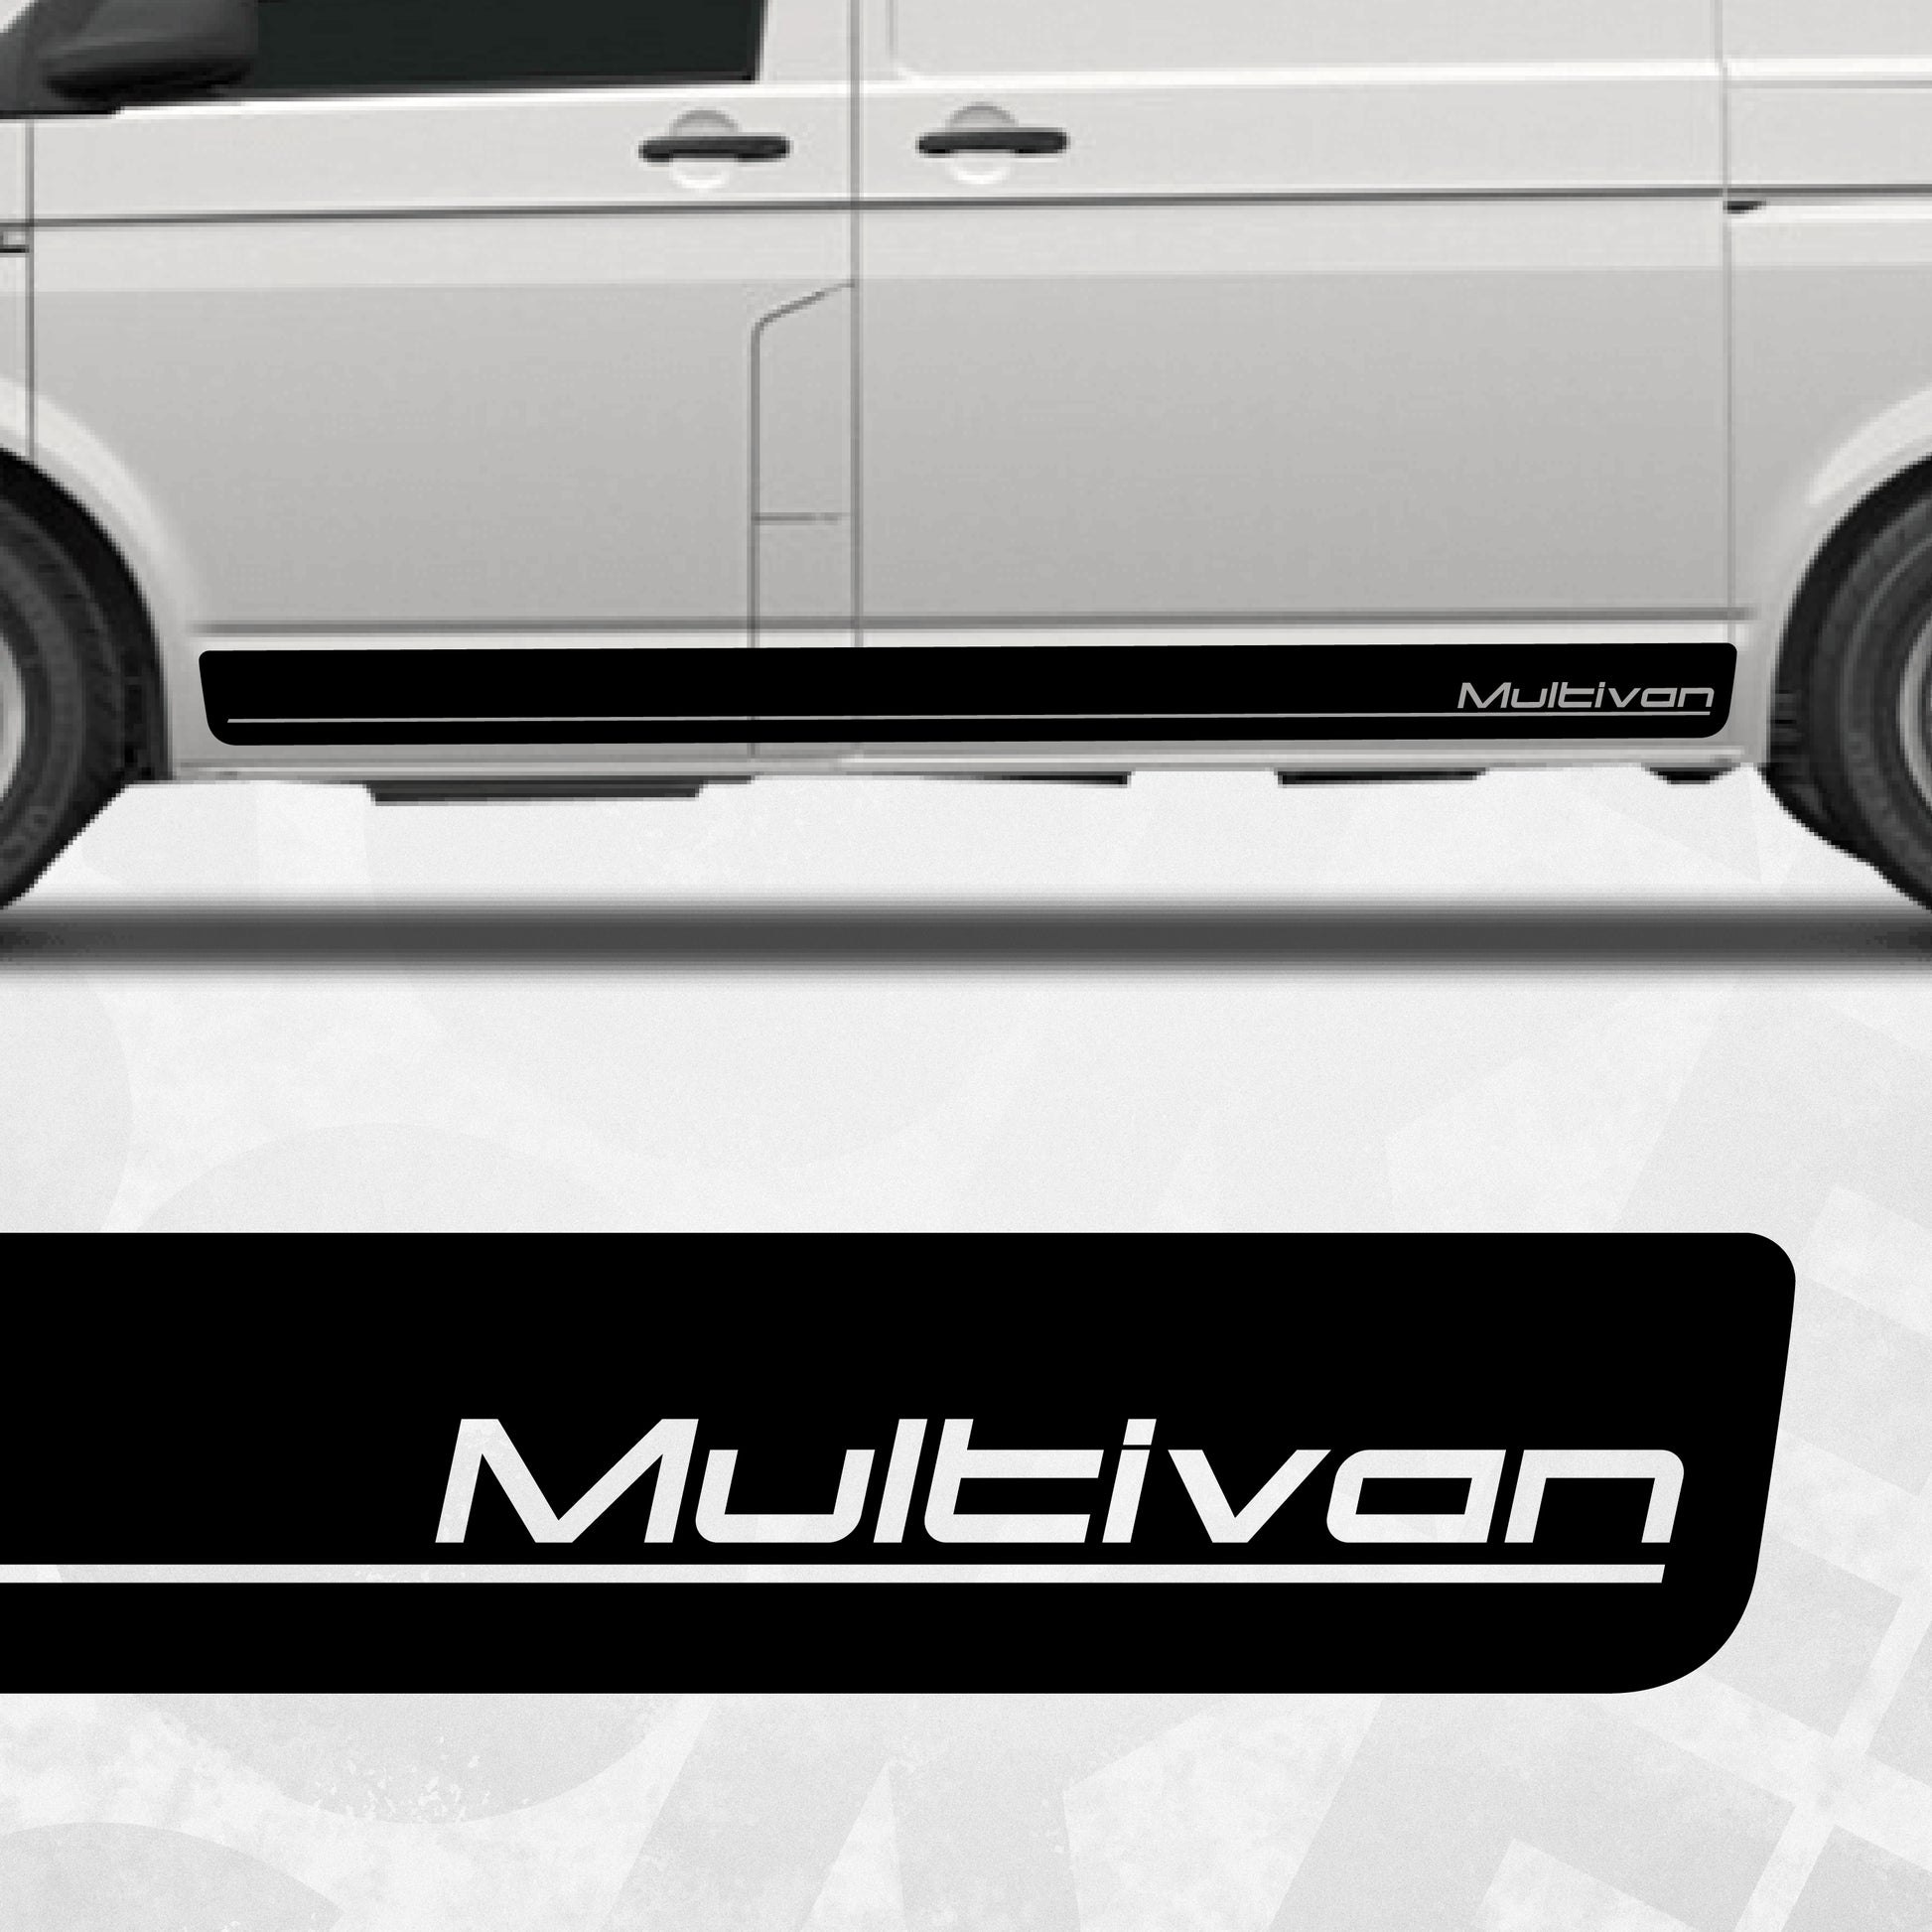 VW Transporter Multivan side stripes - EDITION